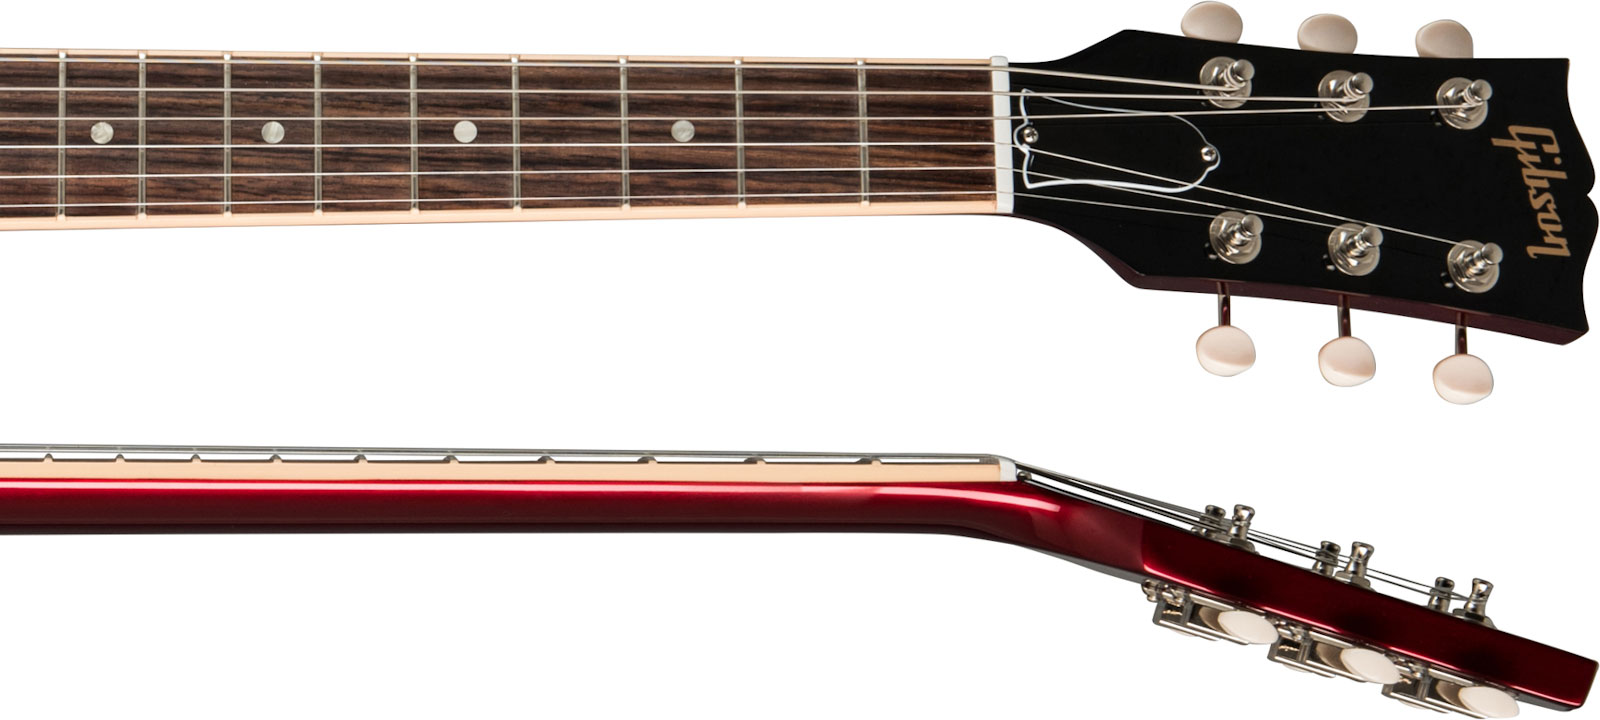 Gibson Sp Special Original 2p90 Ht Rw - Vintage Sparkling Burgundy - Retro-rock elektrische gitaar - Variation 3